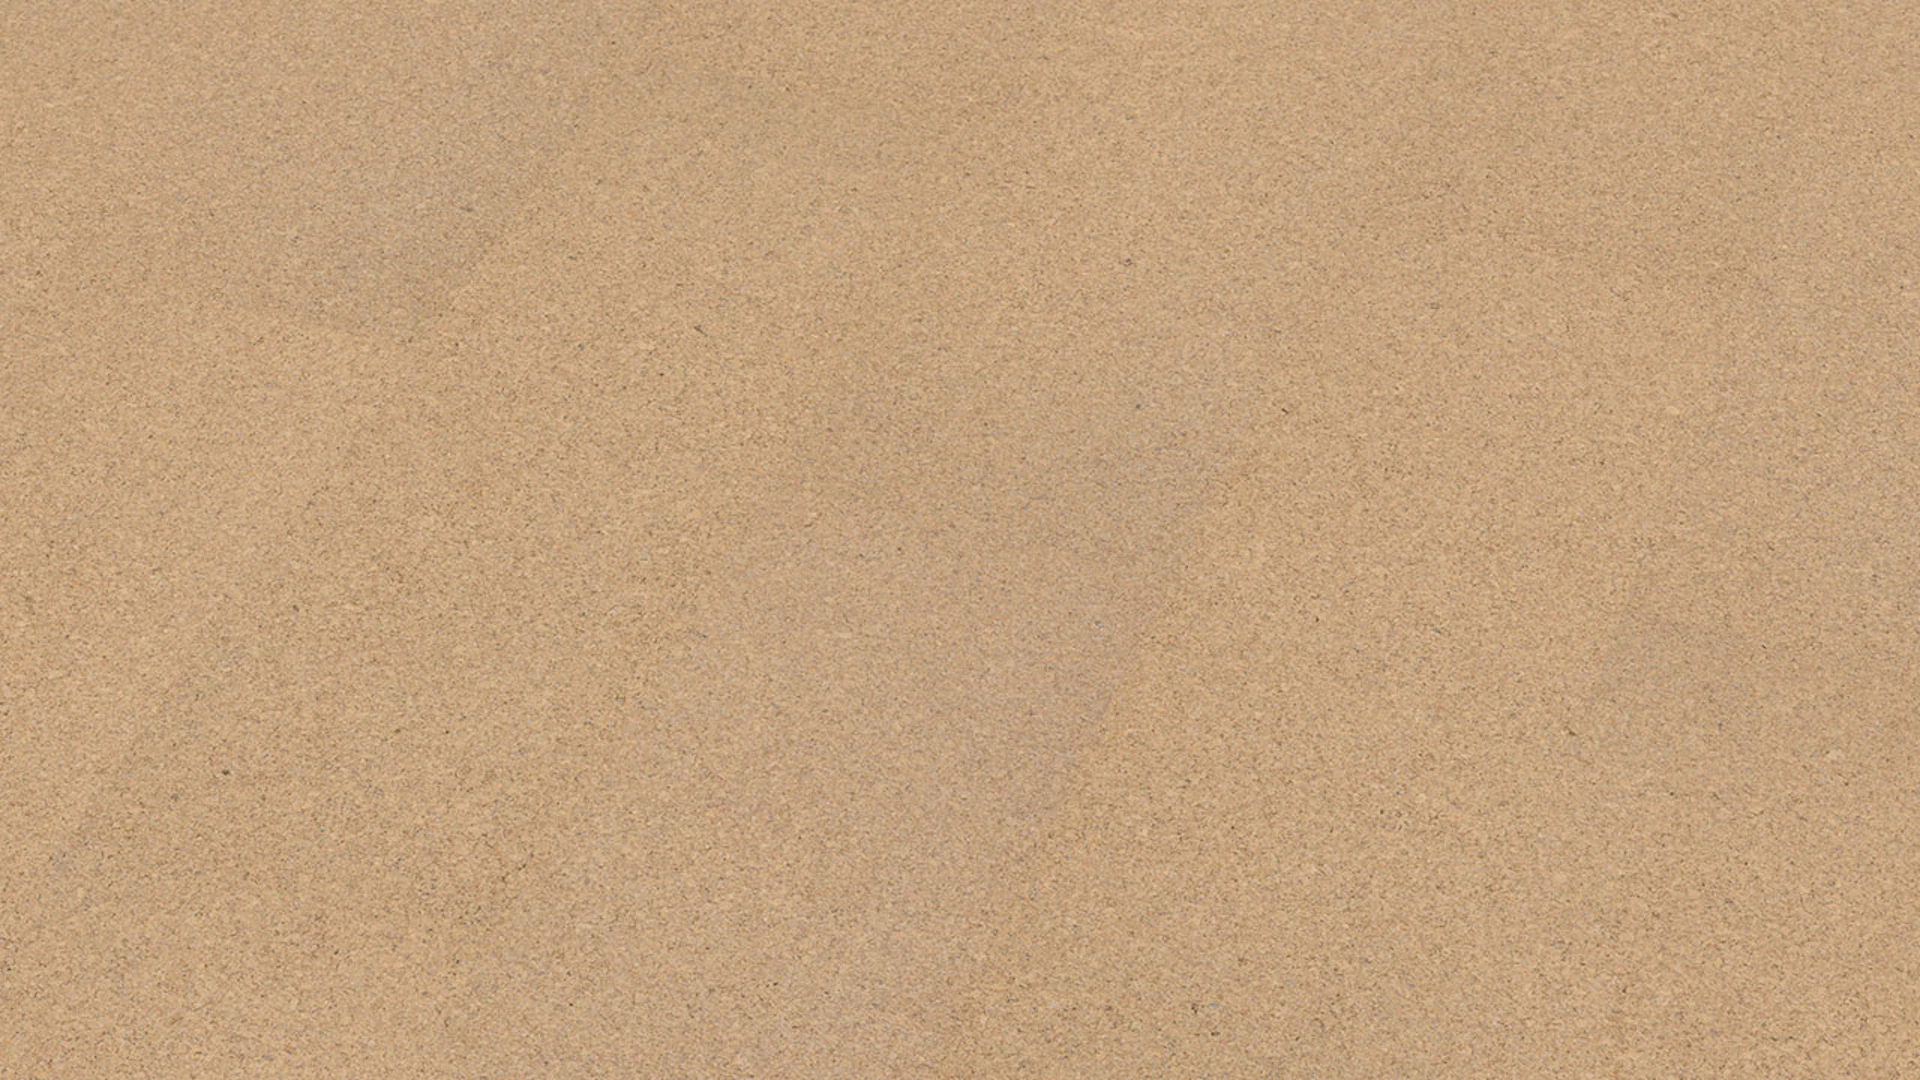 Wicanders pavimento in sughero - Go4Cork Sand - pavimento in sughero nobile impiallacciato